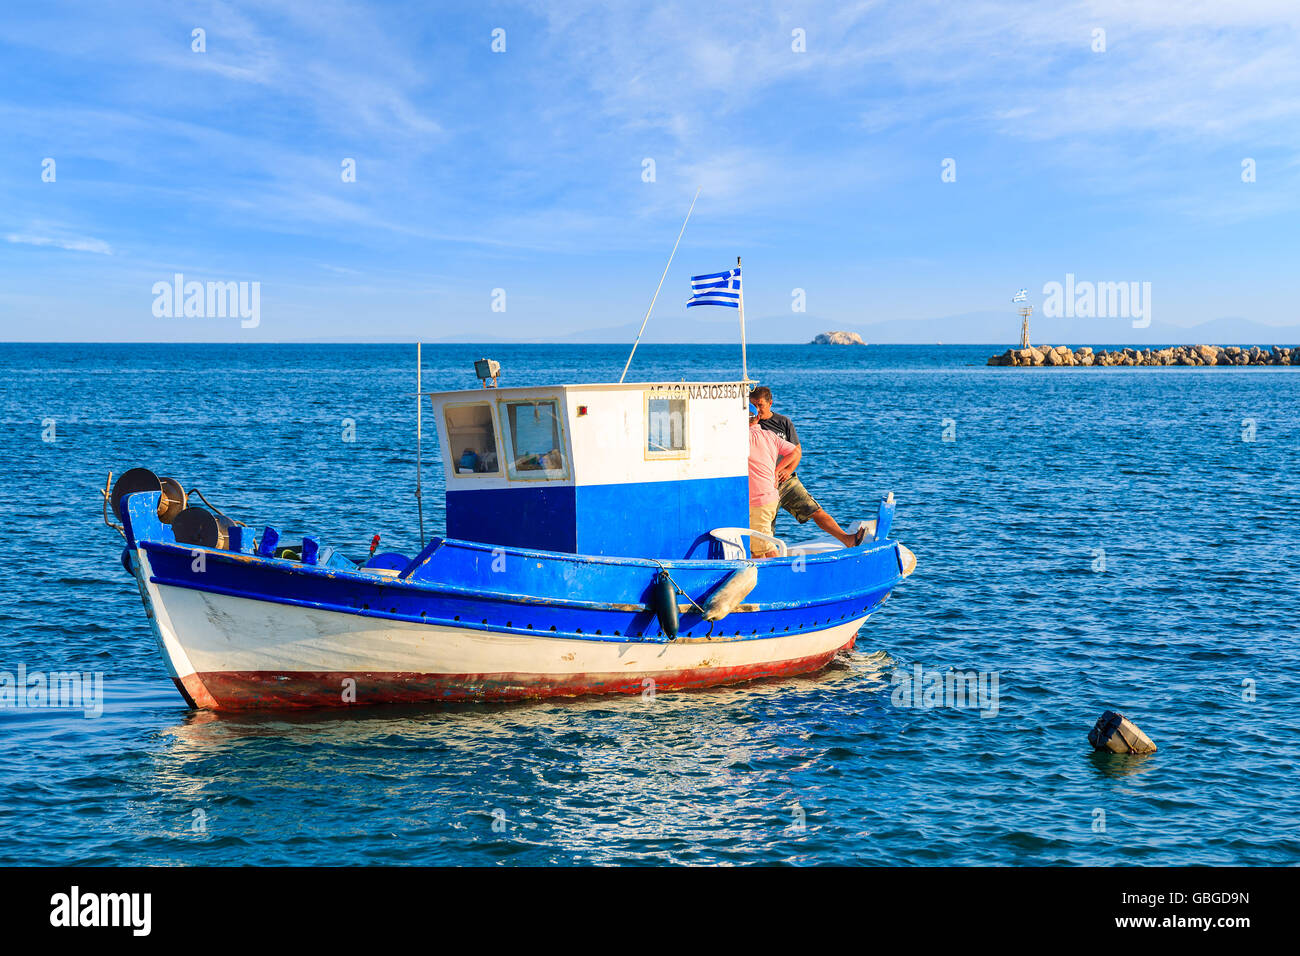 L'île de Samos, Grèce - Sep 20, 2015 : bateau de pêche grec sur la mer bleue avec deux pêcheurs à bord, l'île de Samos, en Grèce. Banque D'Images